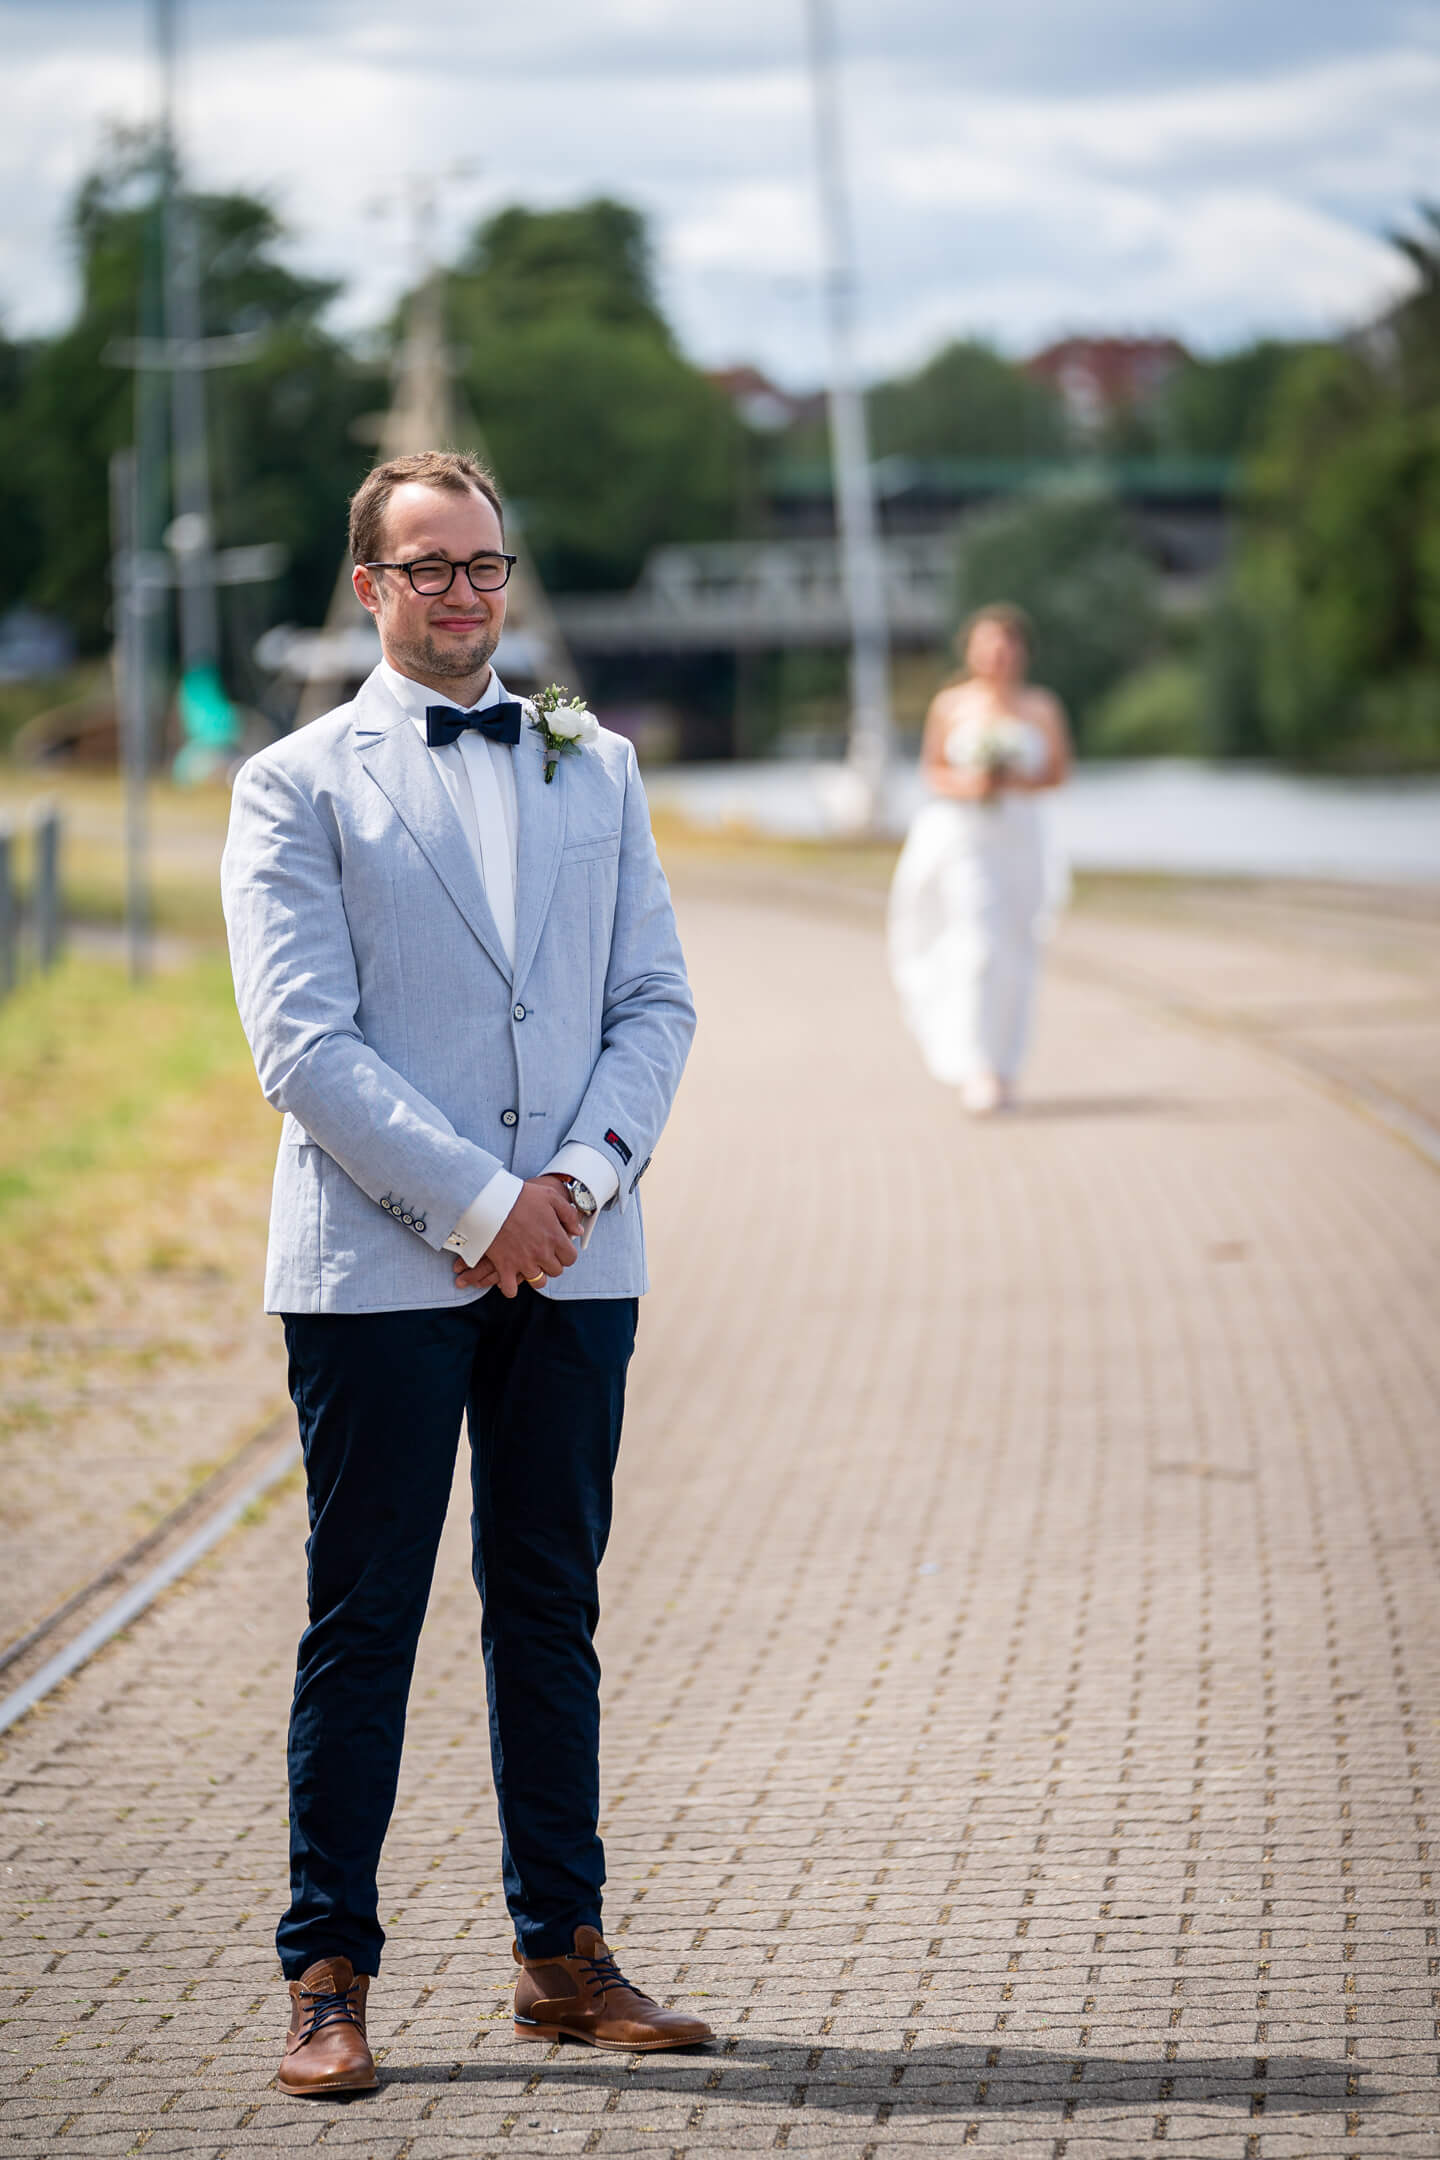 Der Fotograf Florian Läufer hat hier den Bräutigam beim First Look fotografiert. Im Hintergrund ist die Braut zu sehen.